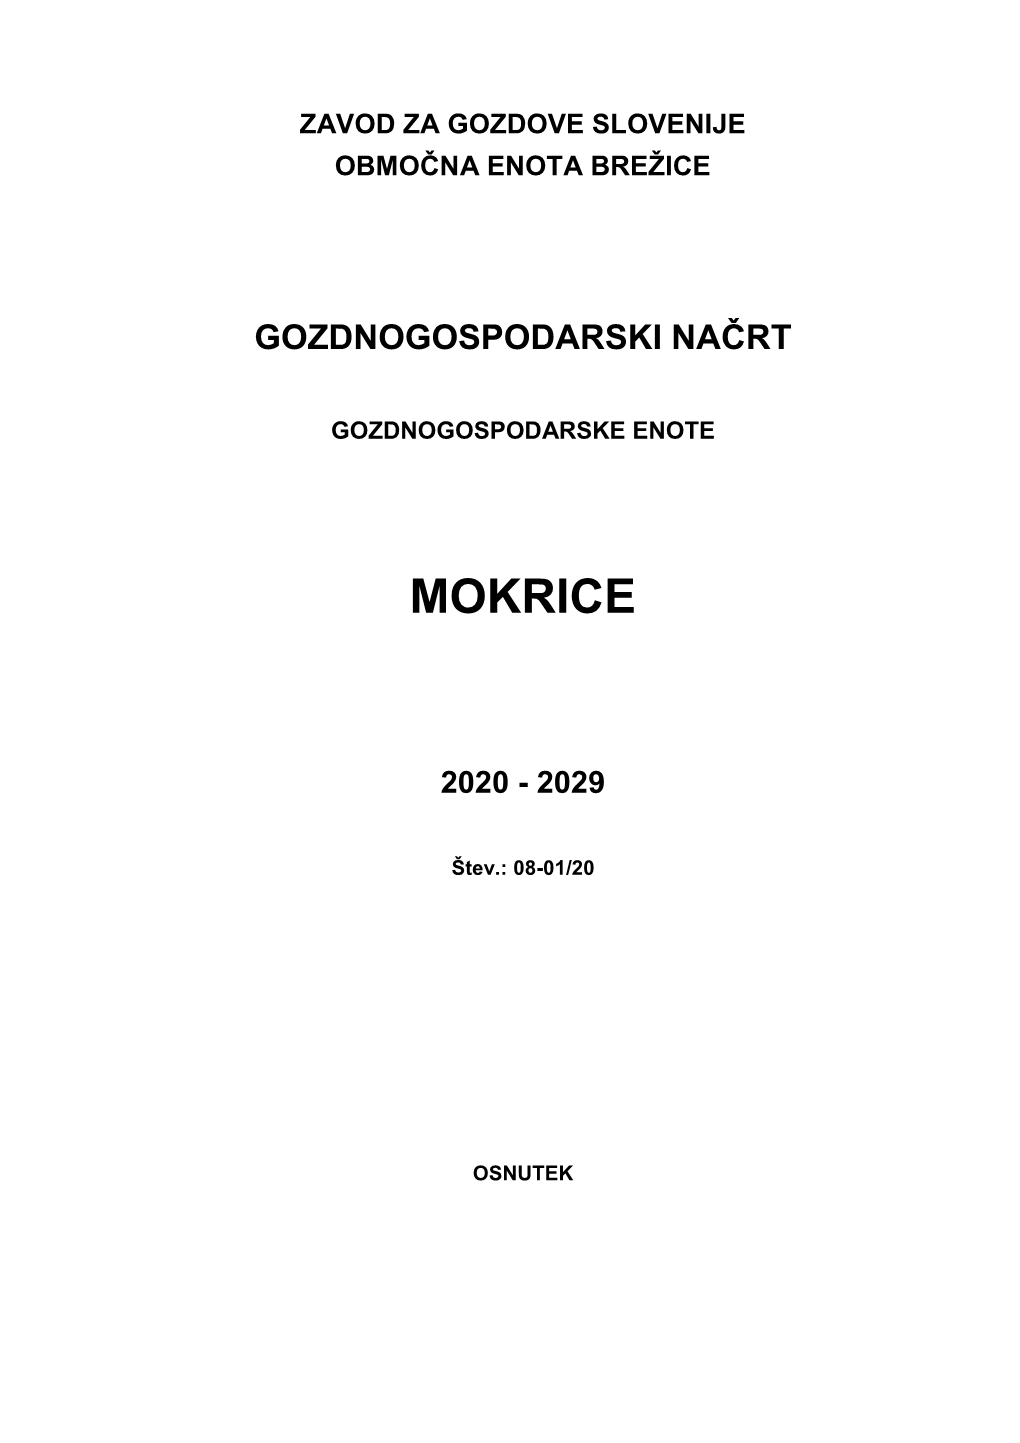 GGN GGE Mokrice Osnutek